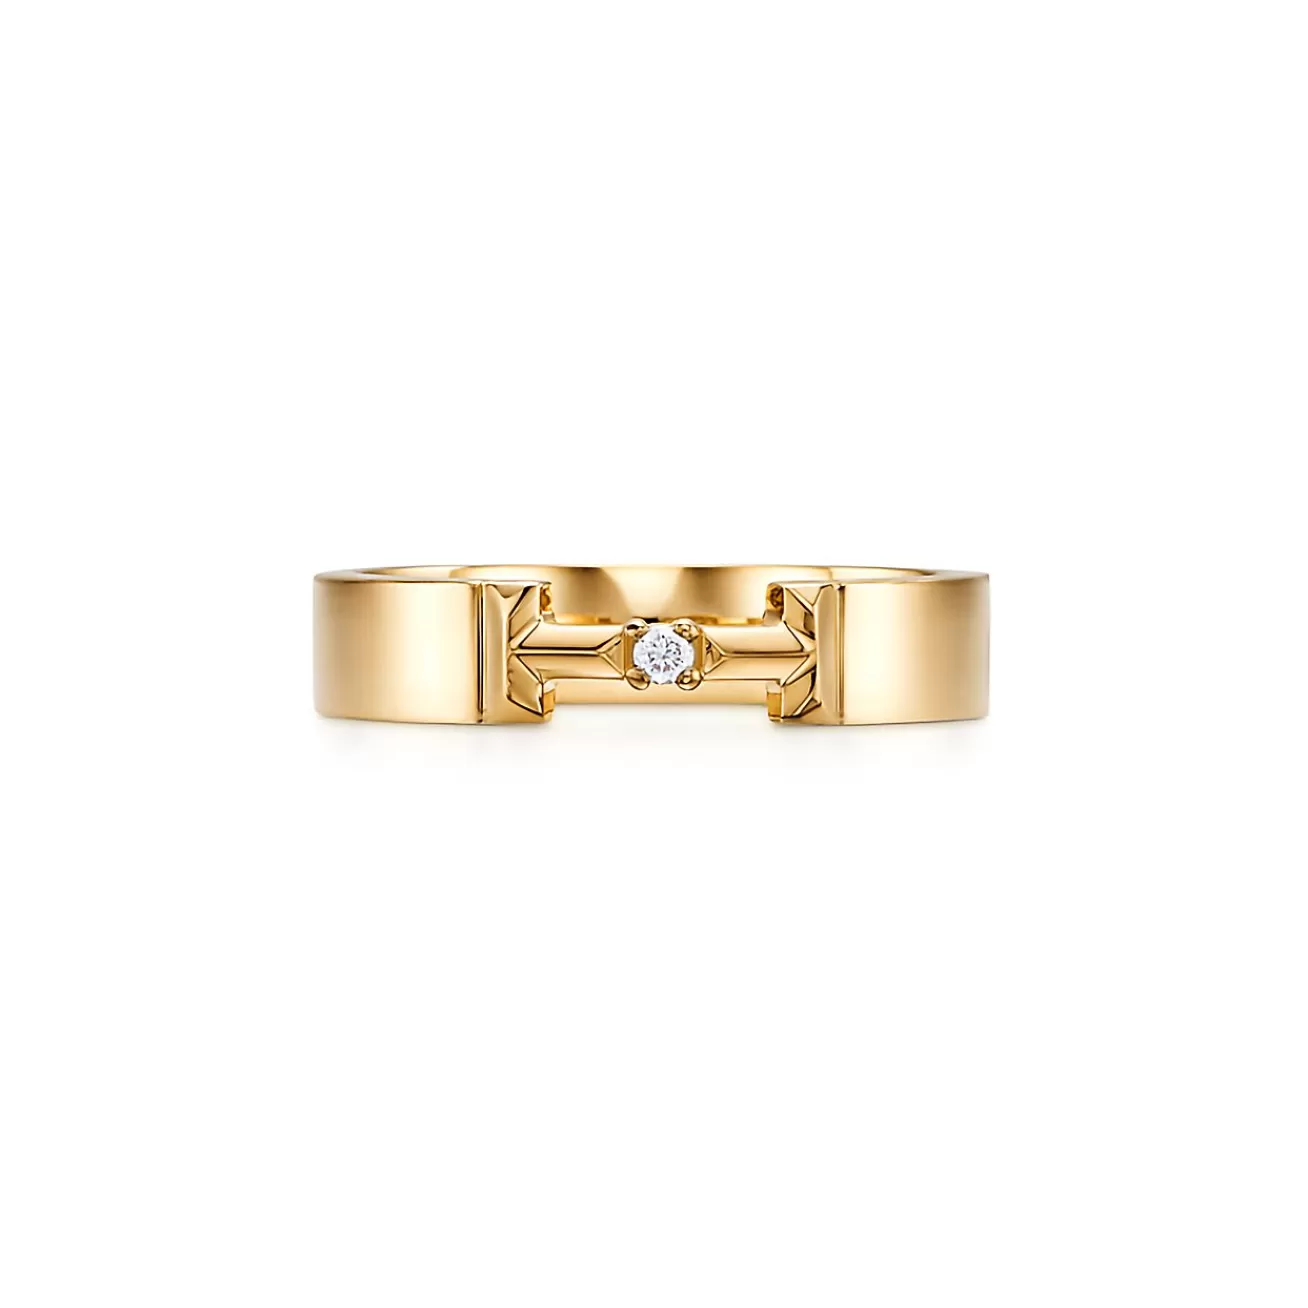 Tiffany & Co. Tiffany T True diamond link ring in 18k gold, 4 mm wide. | ^ Rings | Men's Jewelry